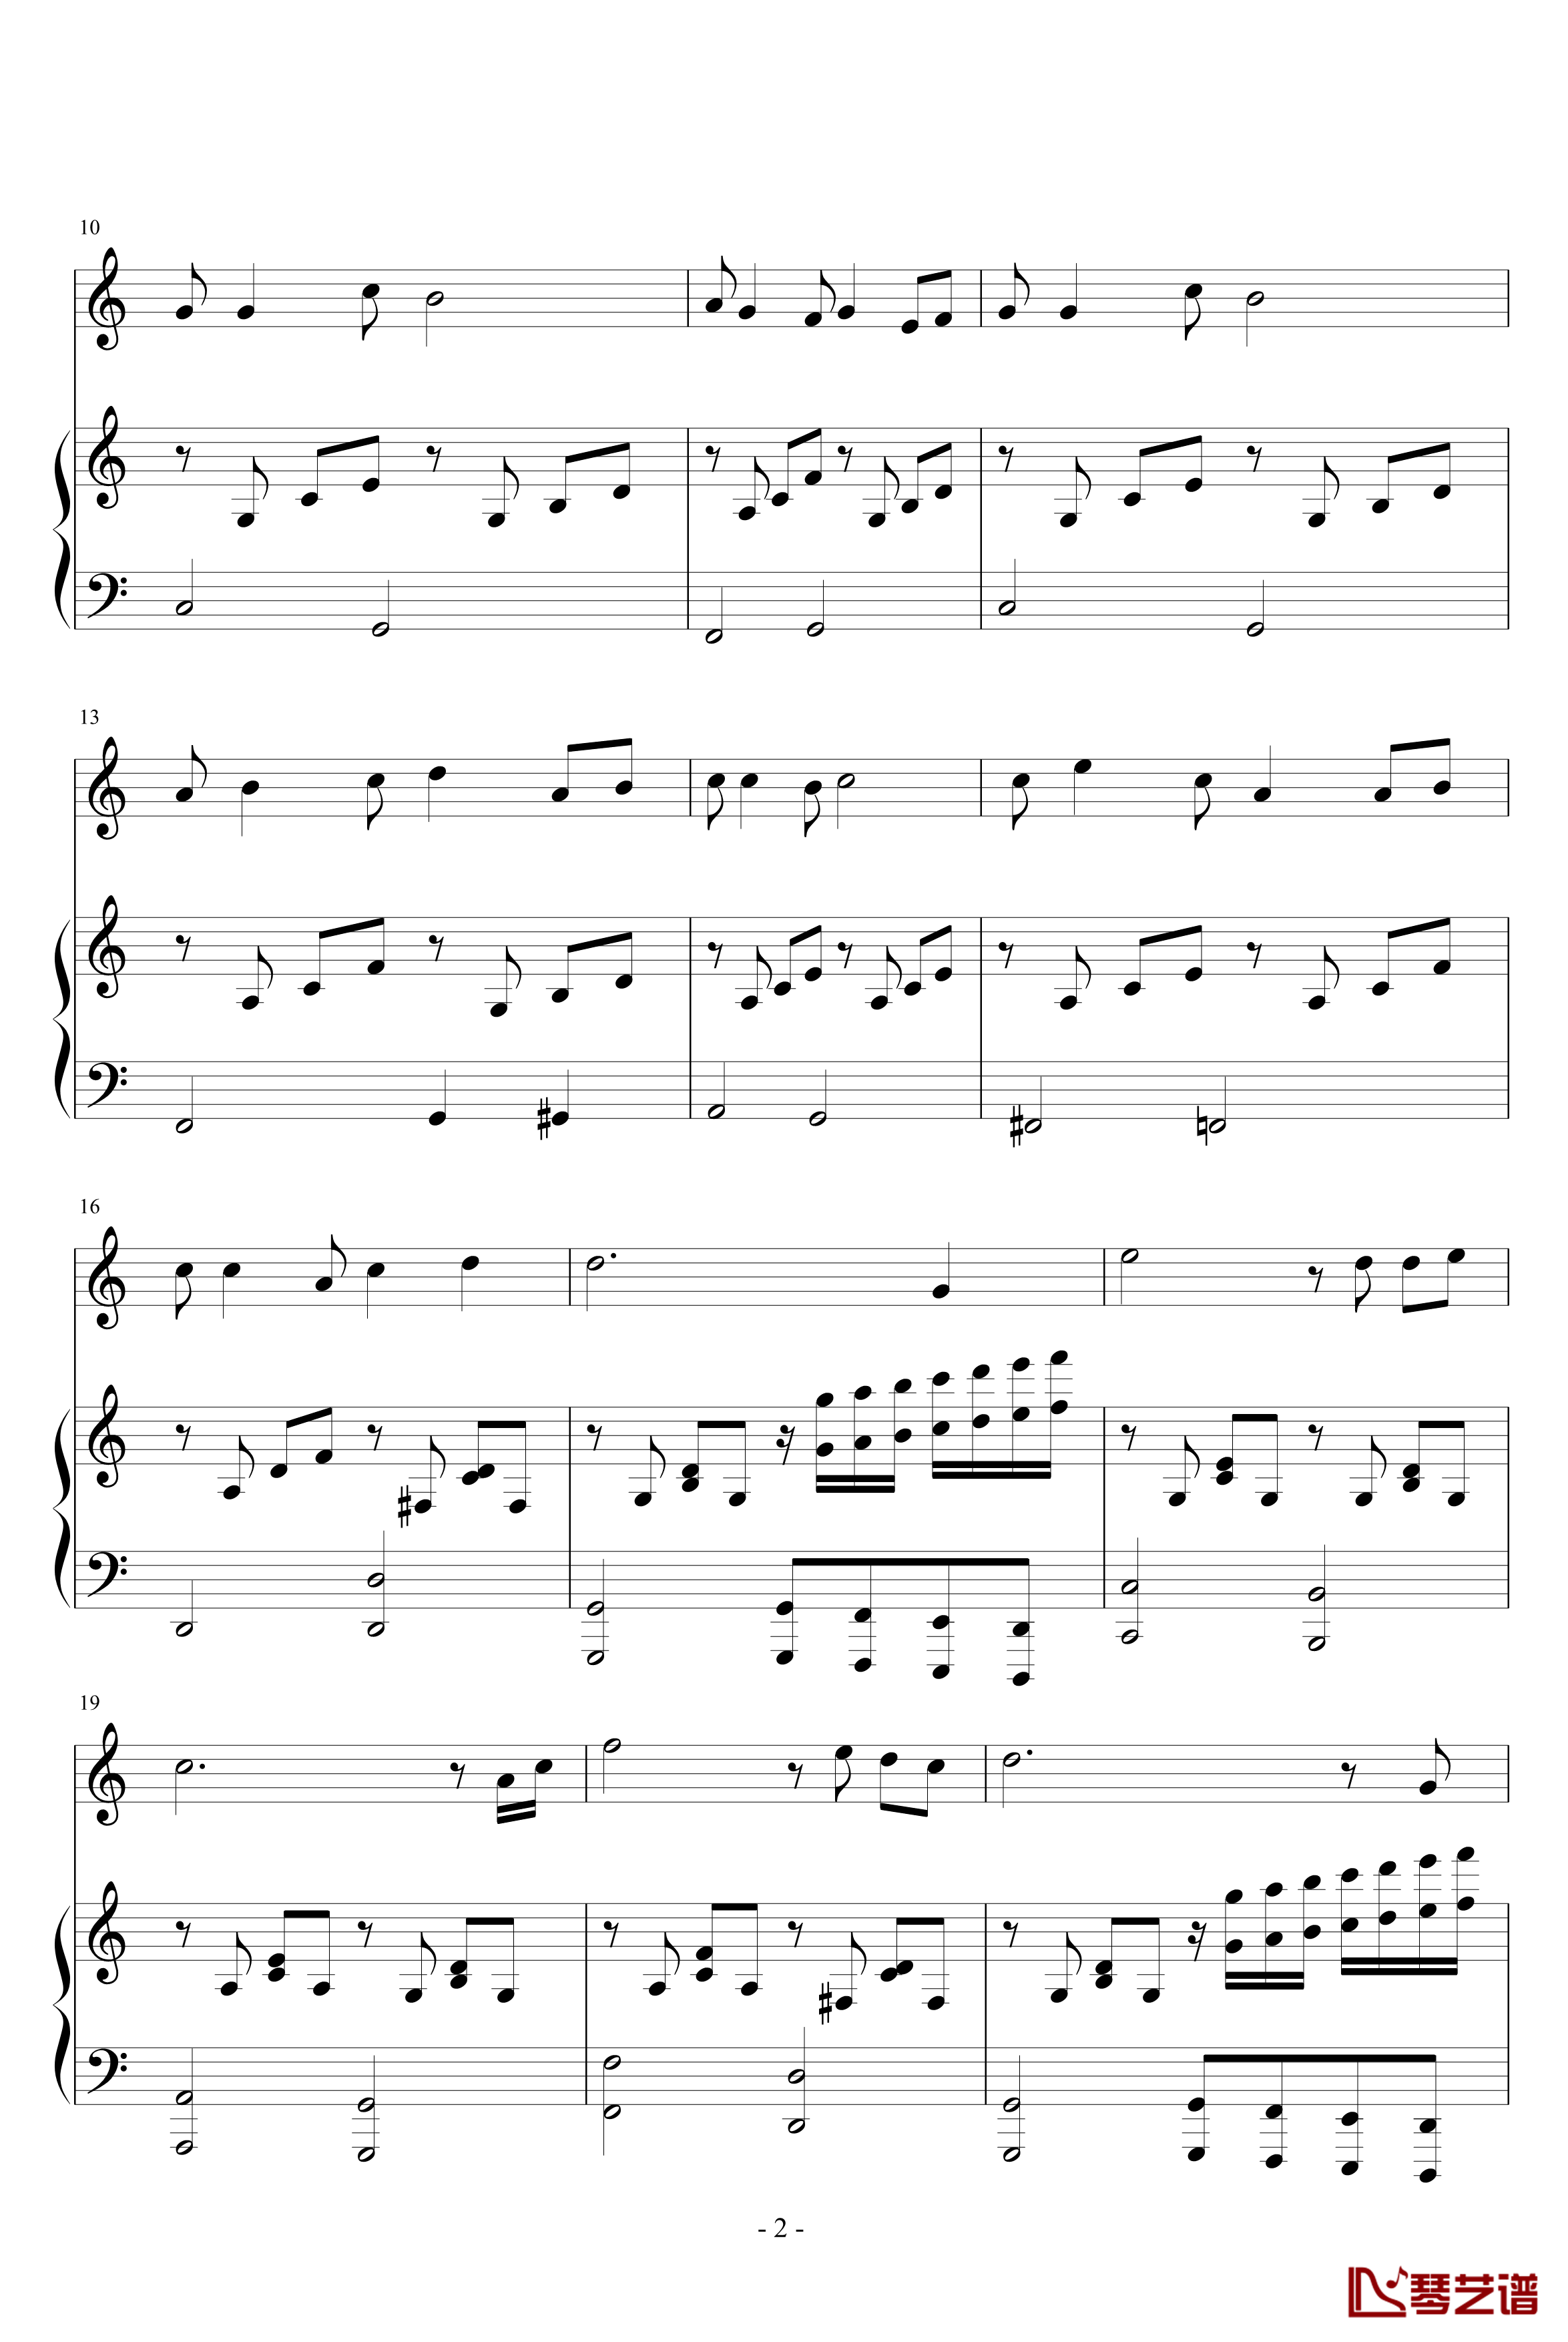 随意弹的钢琴谱-yiliang2